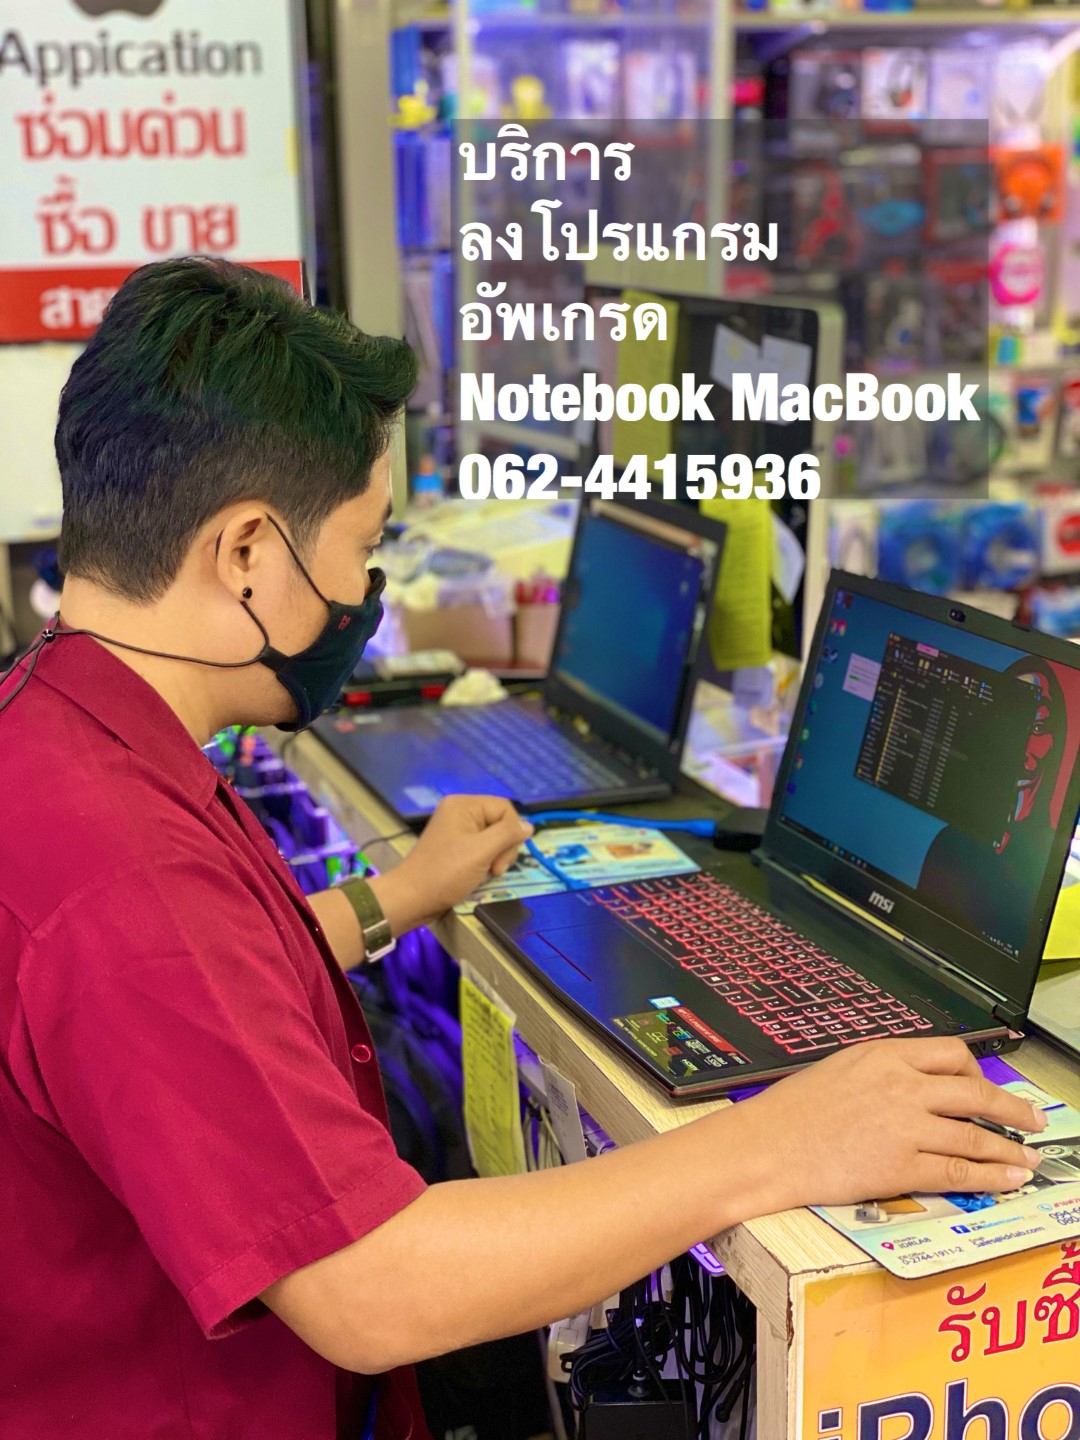 ร้านซ่อมโน๊ตบุ๊ค Notebook ตลาดพูลทรัพย์ ปทุมธานี